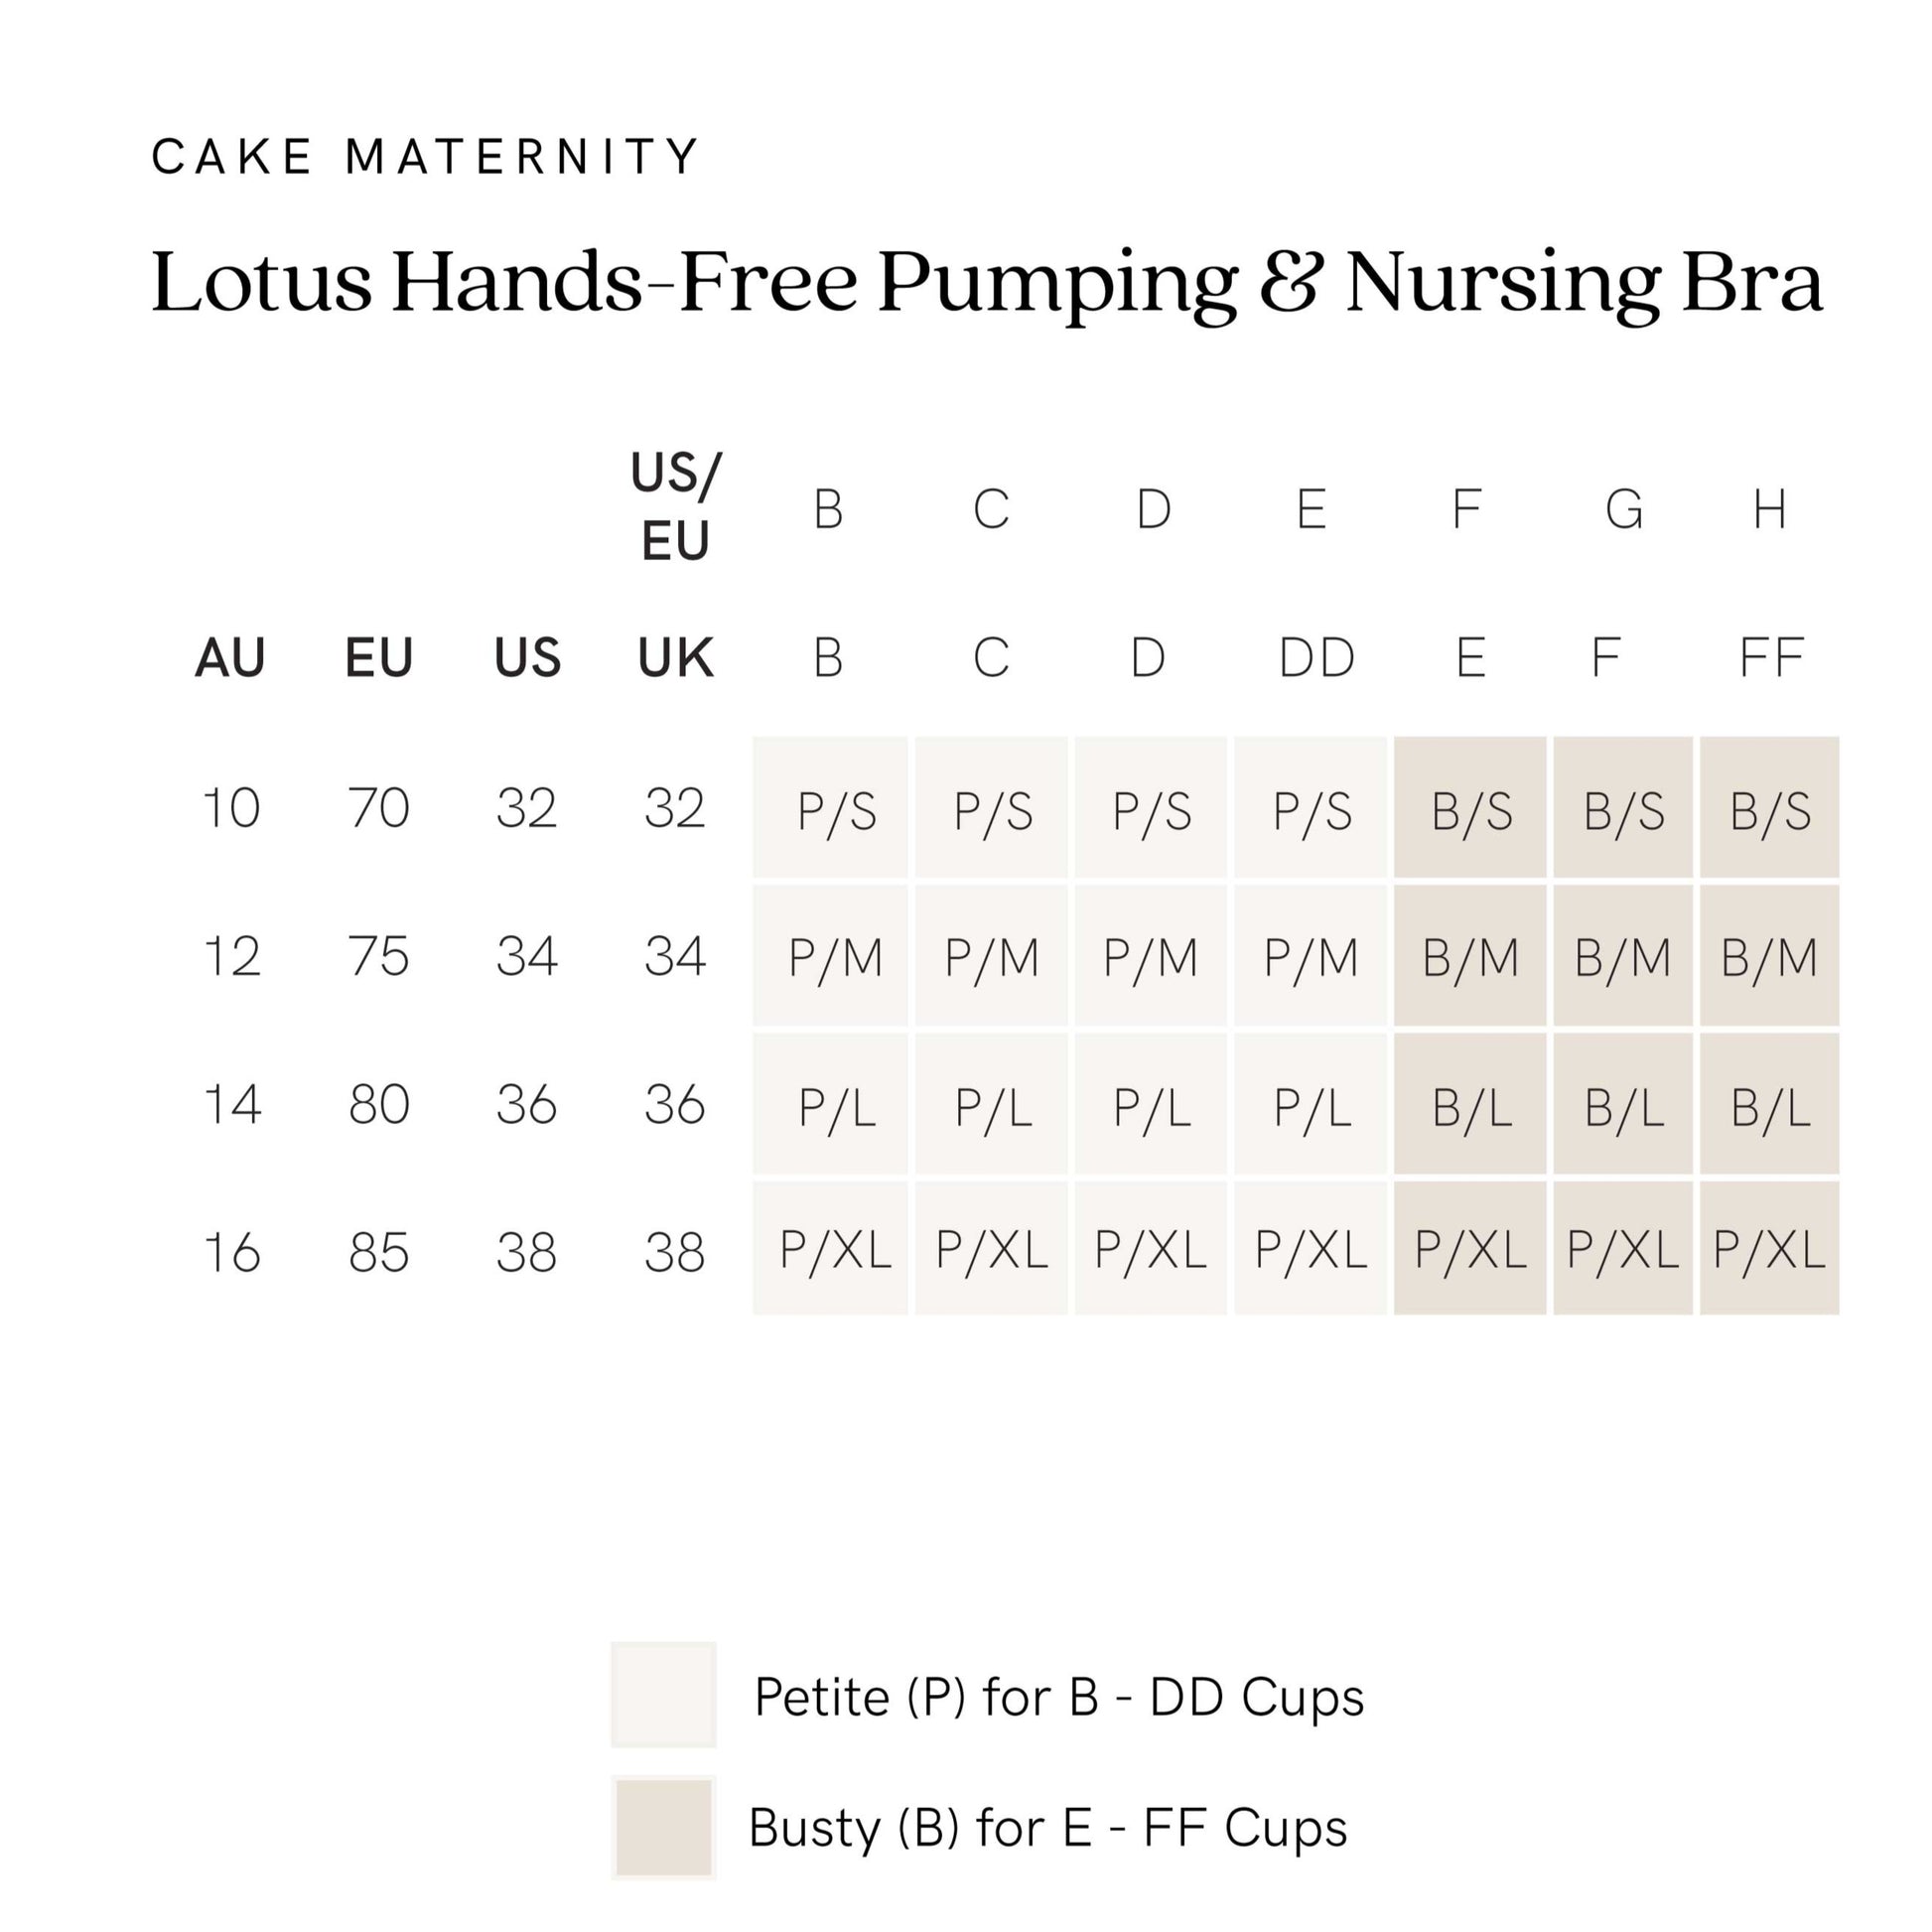 Lotus Hands-free Pumping & Nursing Bra – Cake Maternity